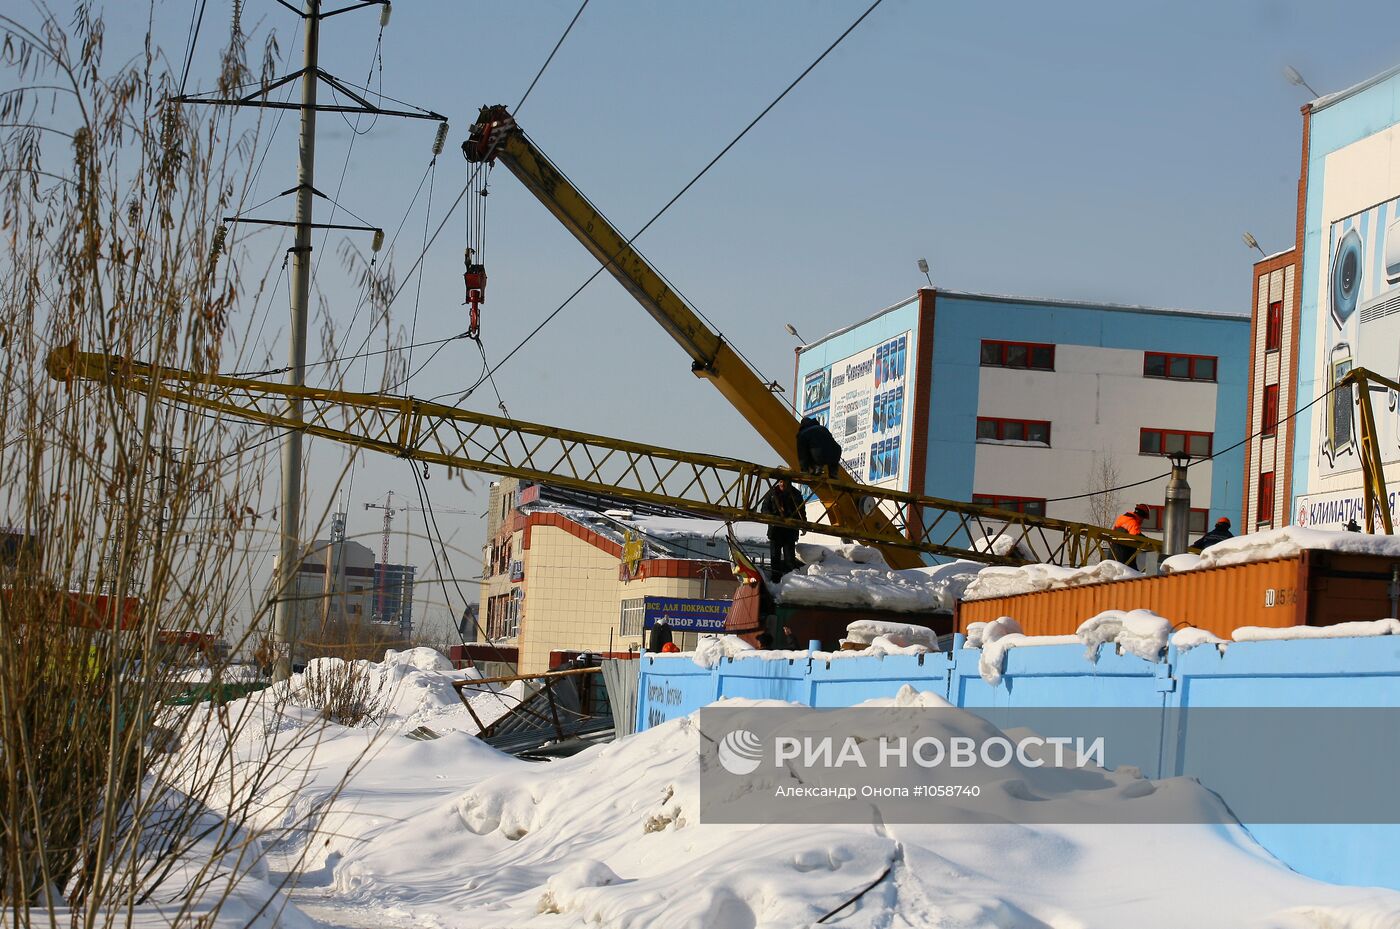 Падение строительного крана на линии электропередачи в Сургуте